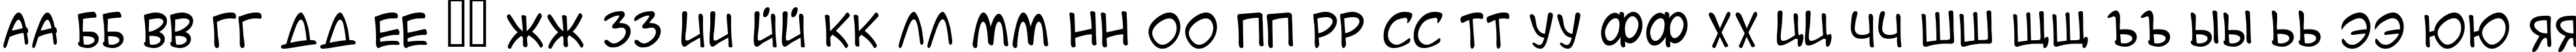 Пример написания русского алфавита шрифтом A.C.M.E. Secret Agent